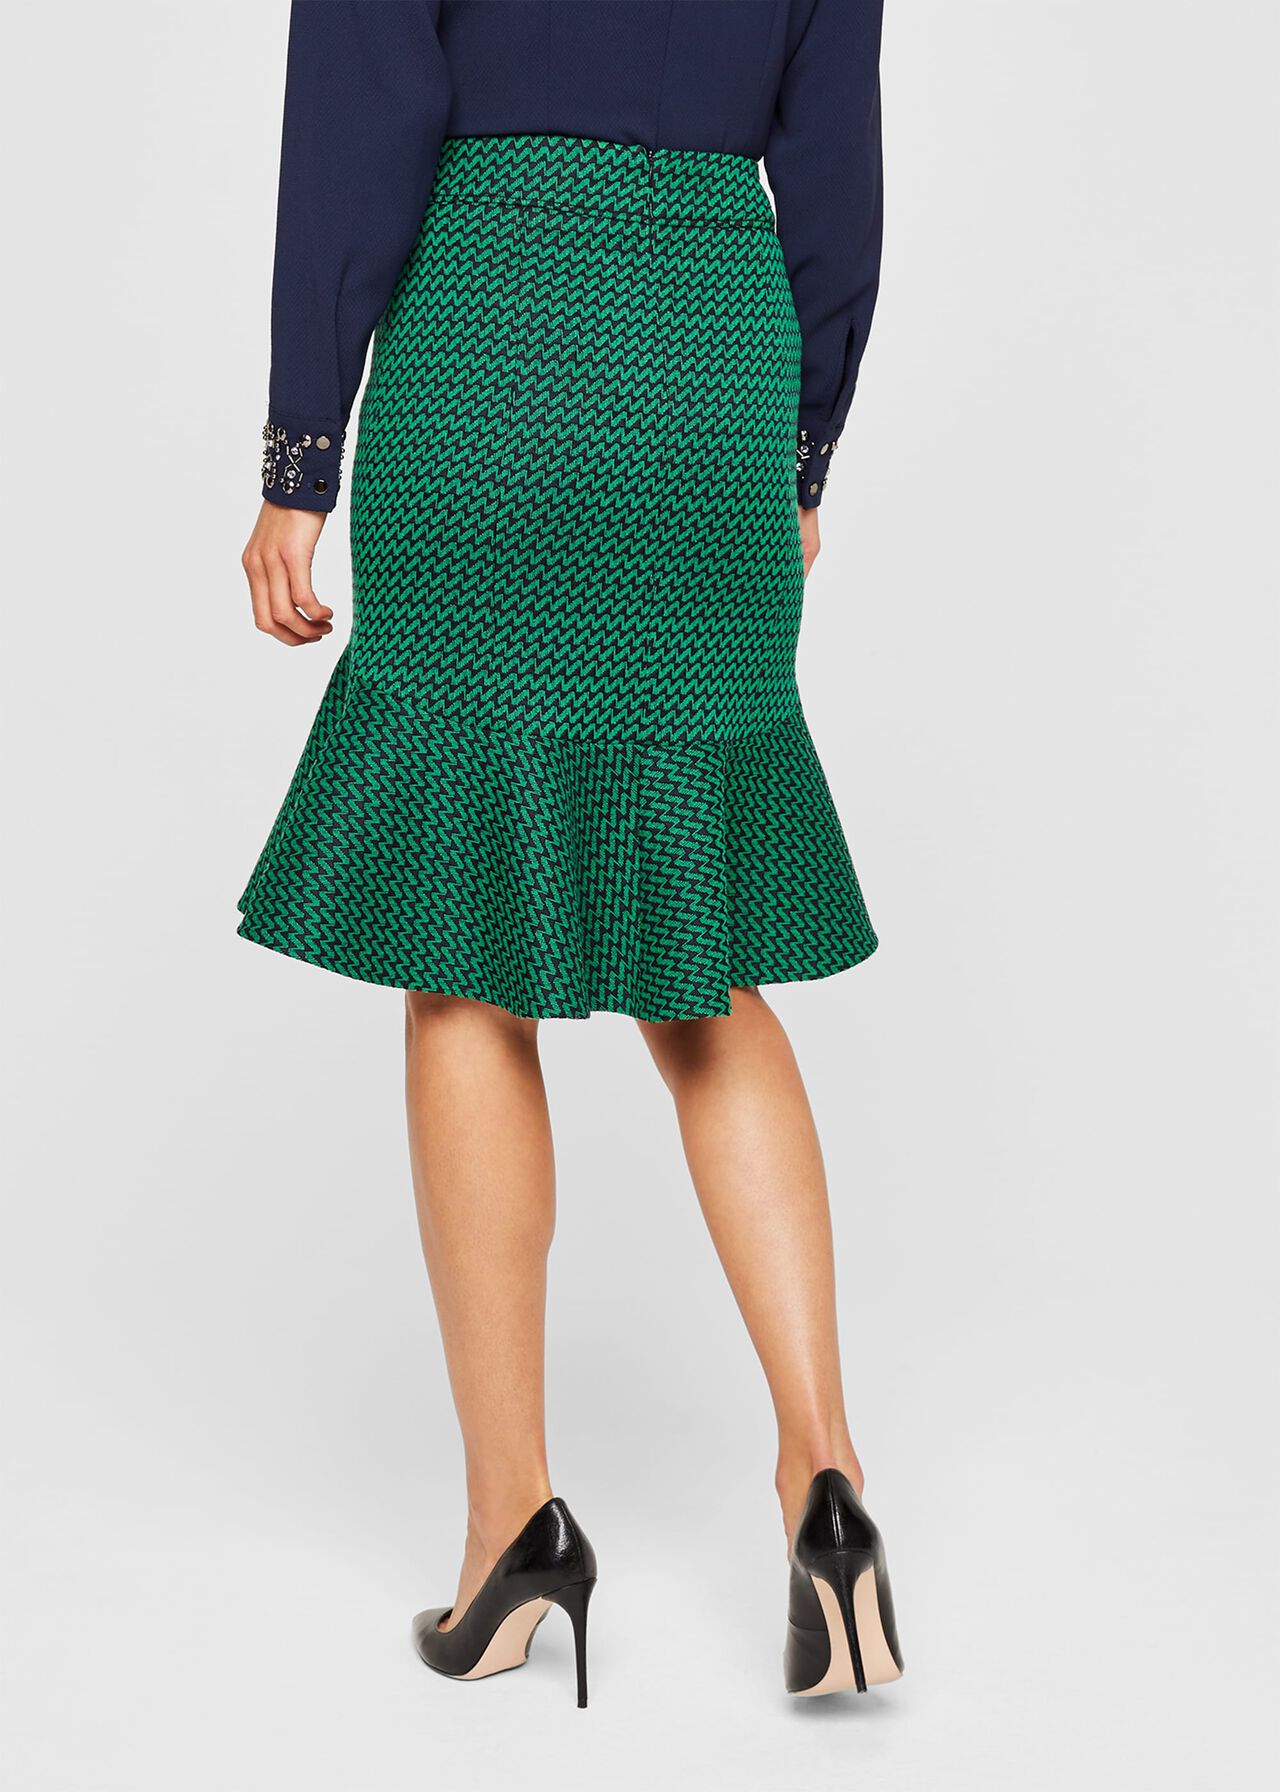 Sabri Tweed Skirt